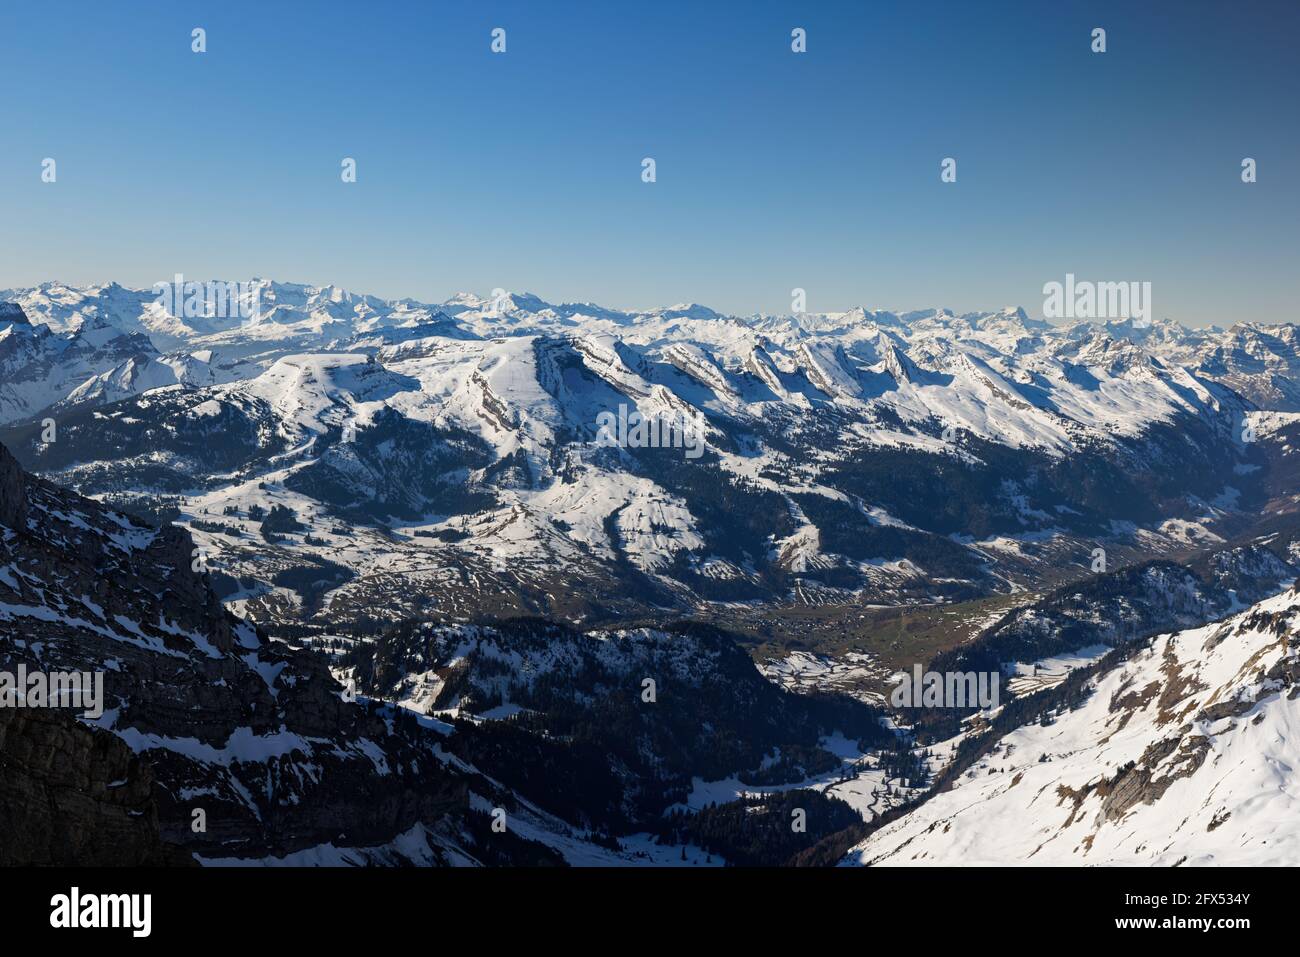 paysage de montagne suisse dans la neige photographié de la vue d'oiseau, ciel sans nuages avec une visibilité extrême, jour, sans personnes, dans le backgro Banque D'Images